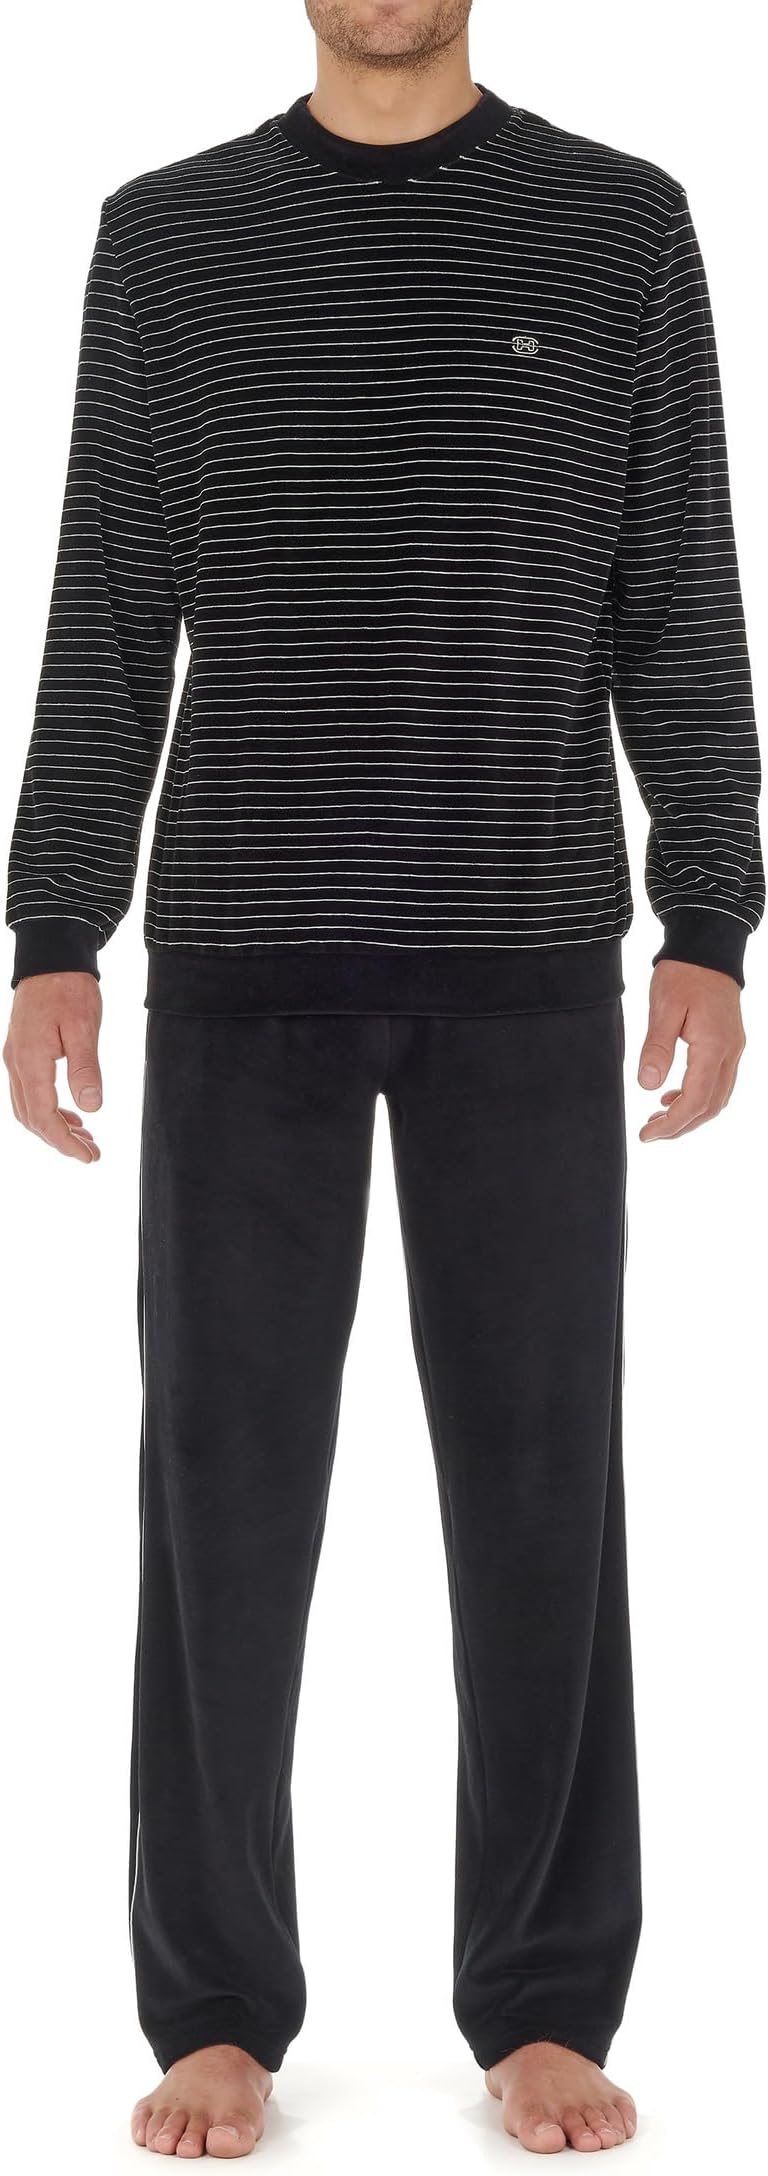 Норманский бархатный комплект домашней одежды HOM, цвет Black/White Stripes